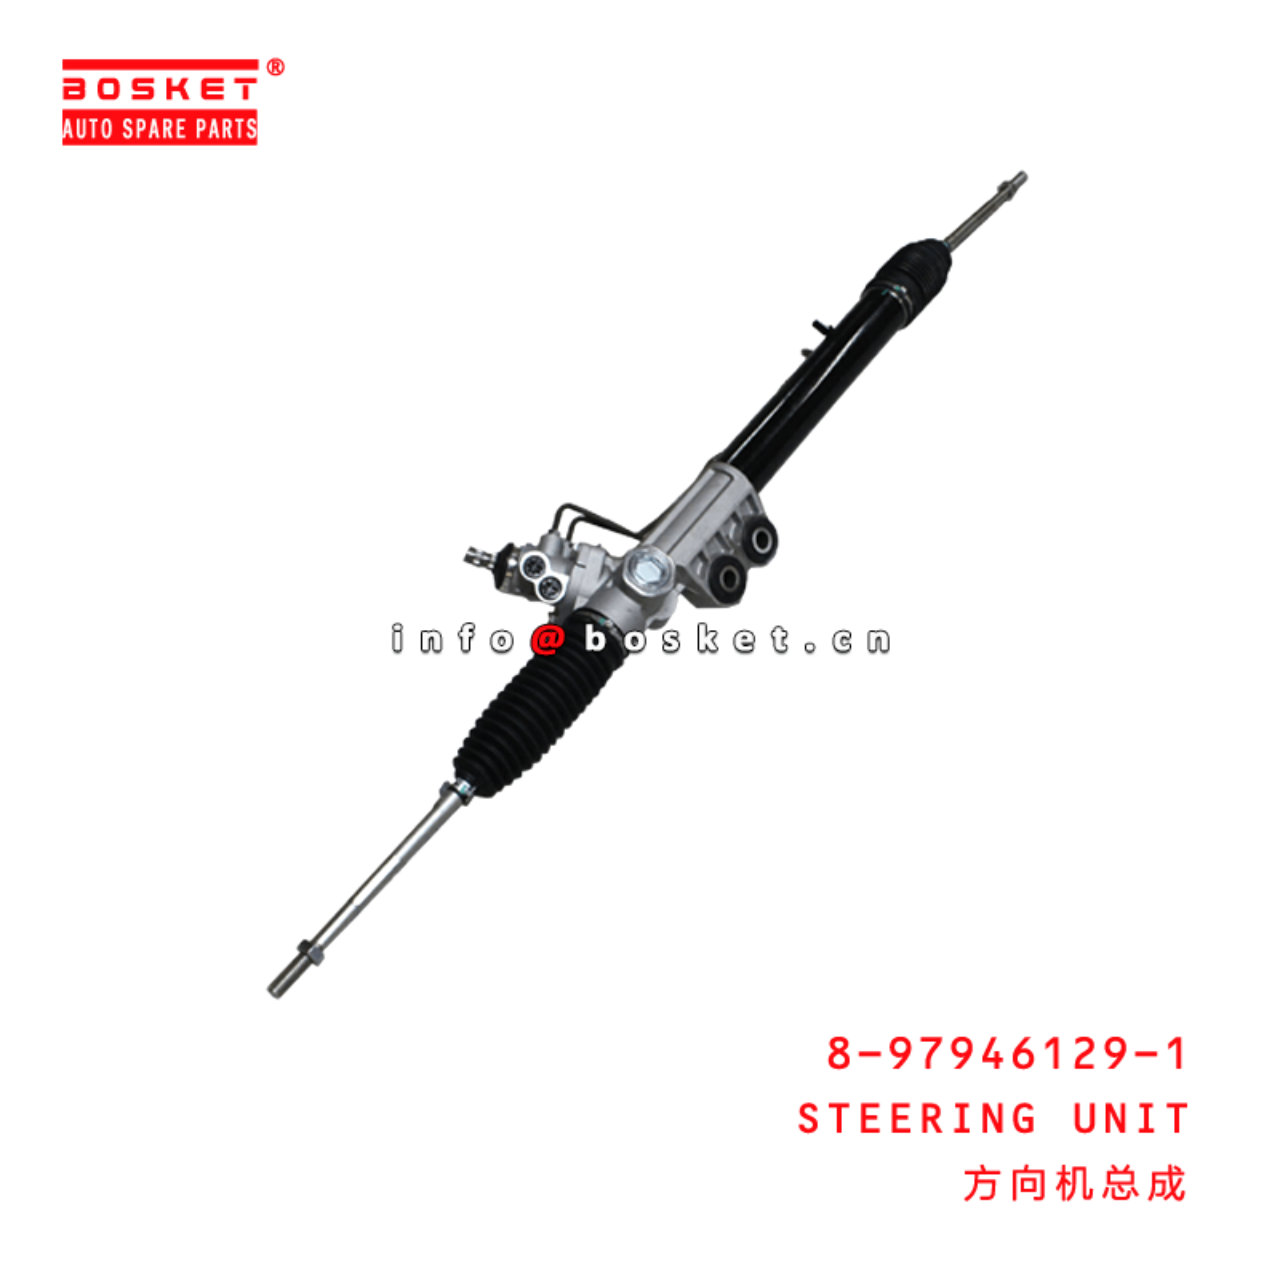 8-97946129-1 Steering Unit 8979461291 Suitable for ISUZU D-MAX 2012-2020